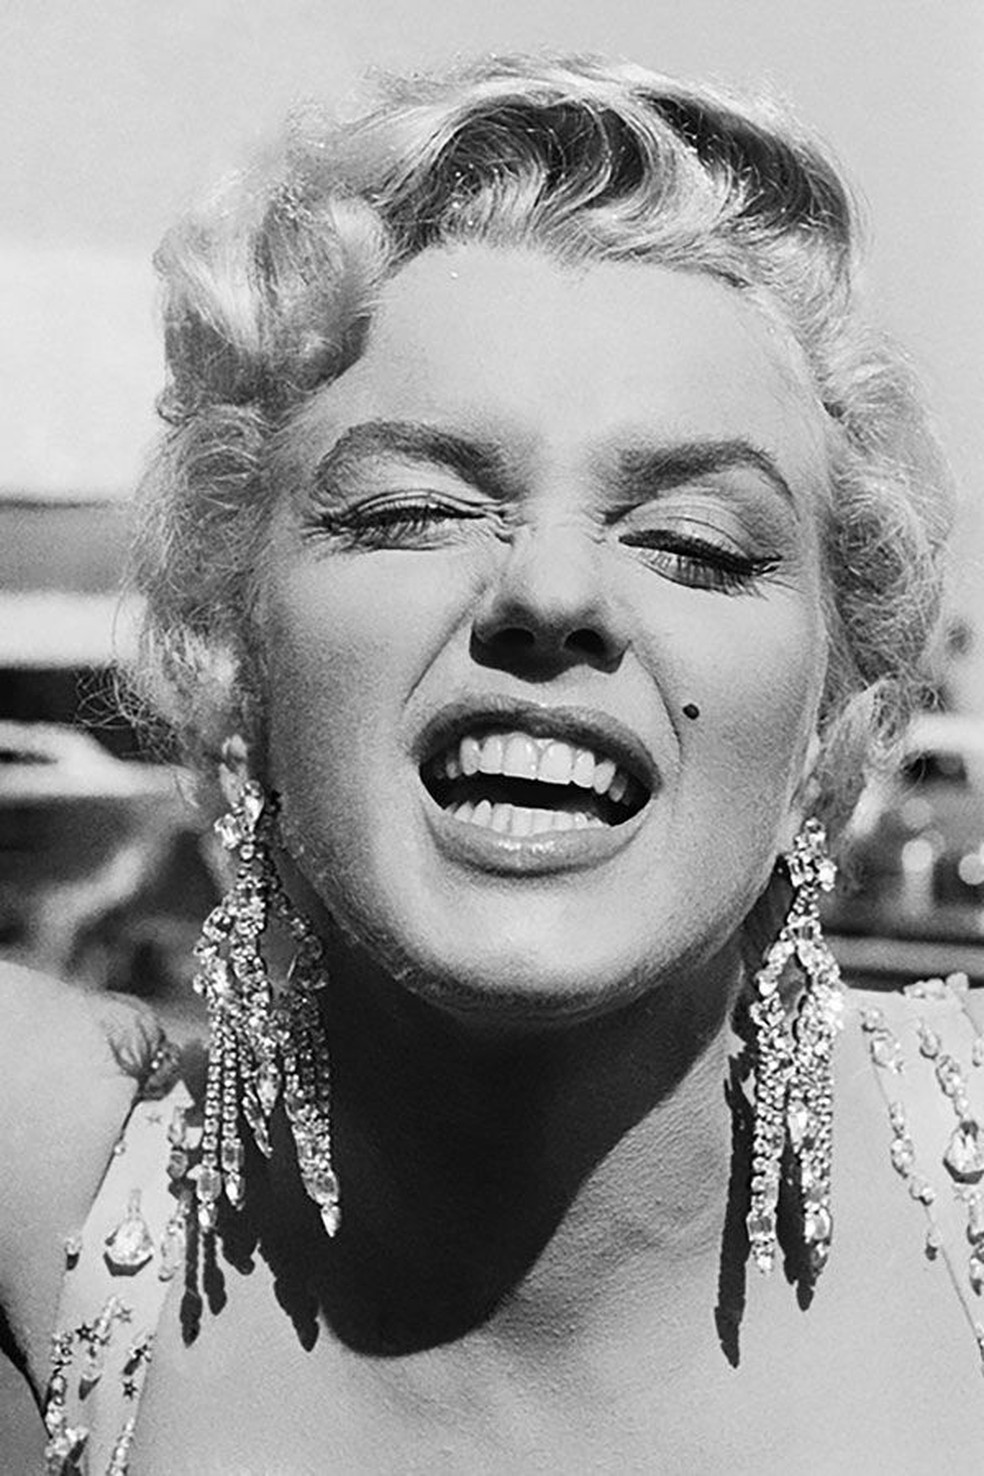 Fotos da exposição de Marilyn Monroe (Foto: Reprodução) — Foto: Vogue